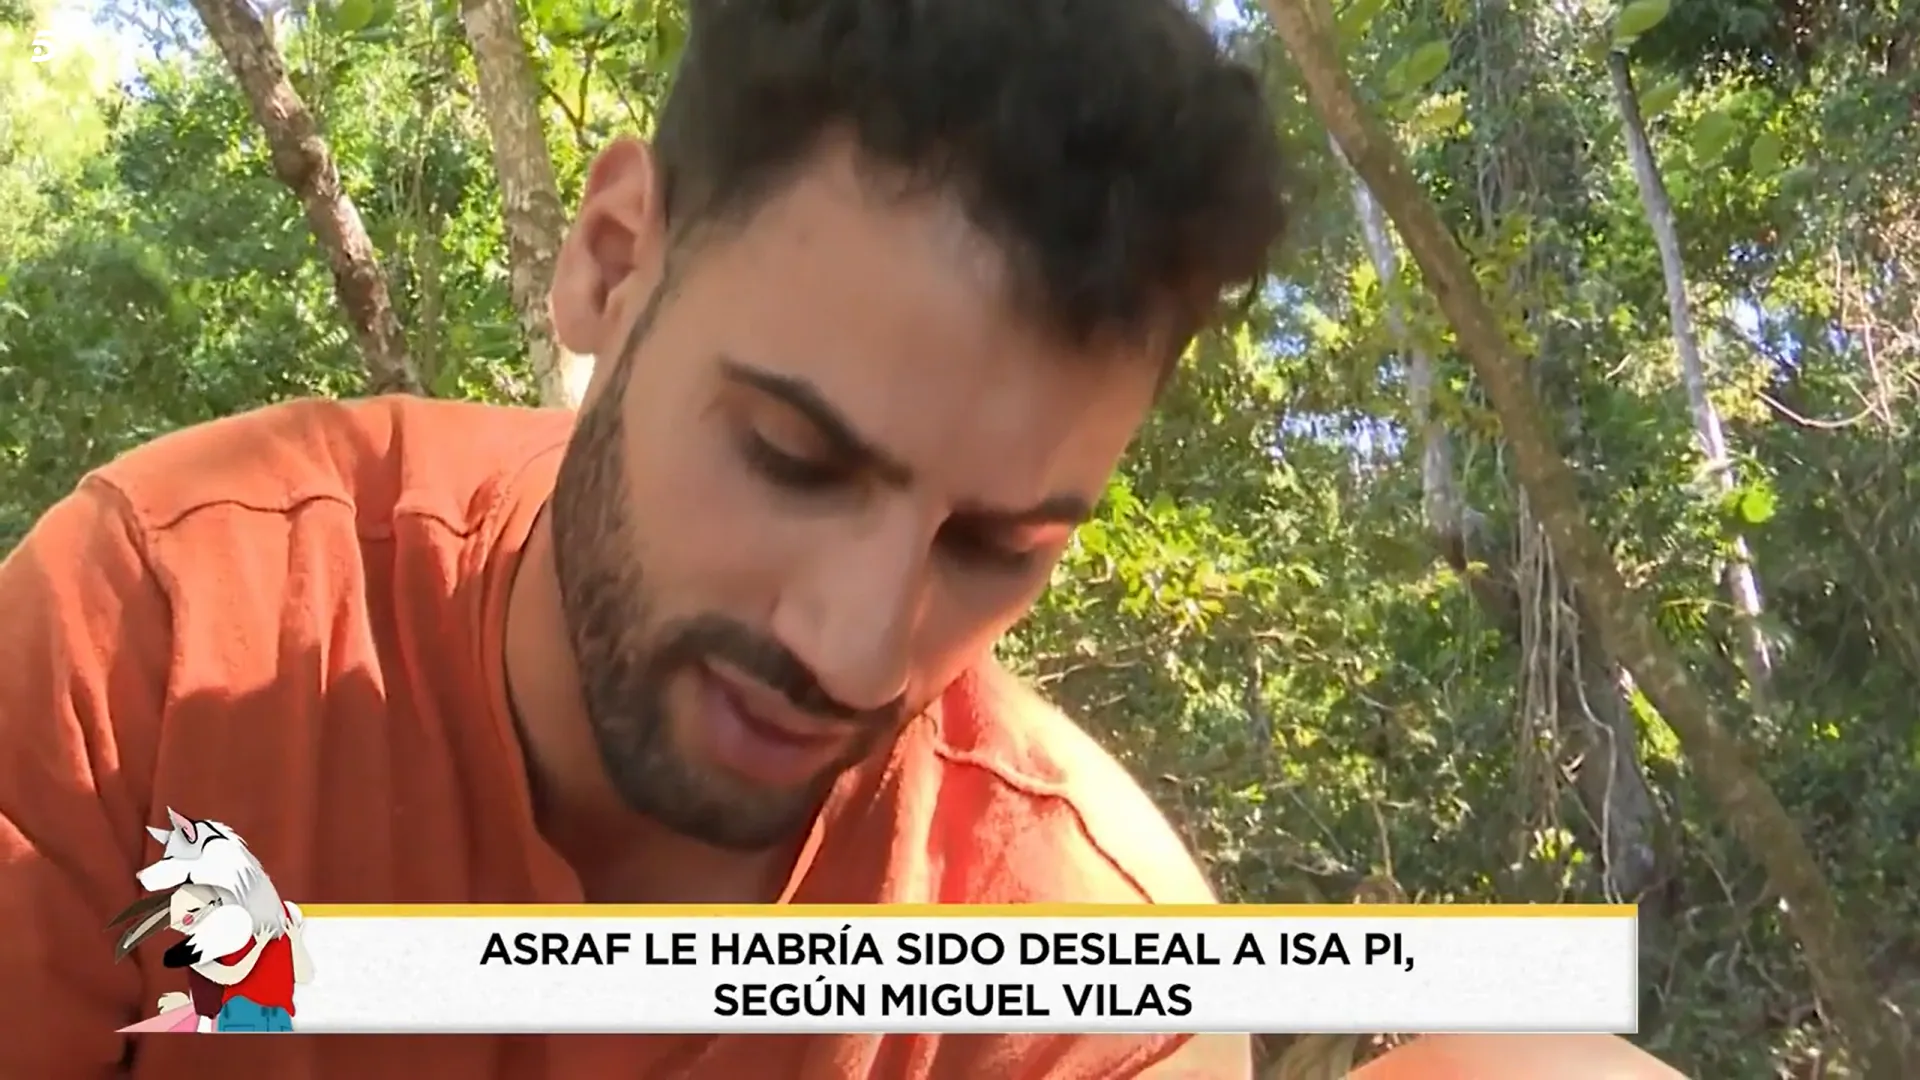 Asraf Beno le habría sido desleal a Isa P, según Miguel Vilas (Telecinco)